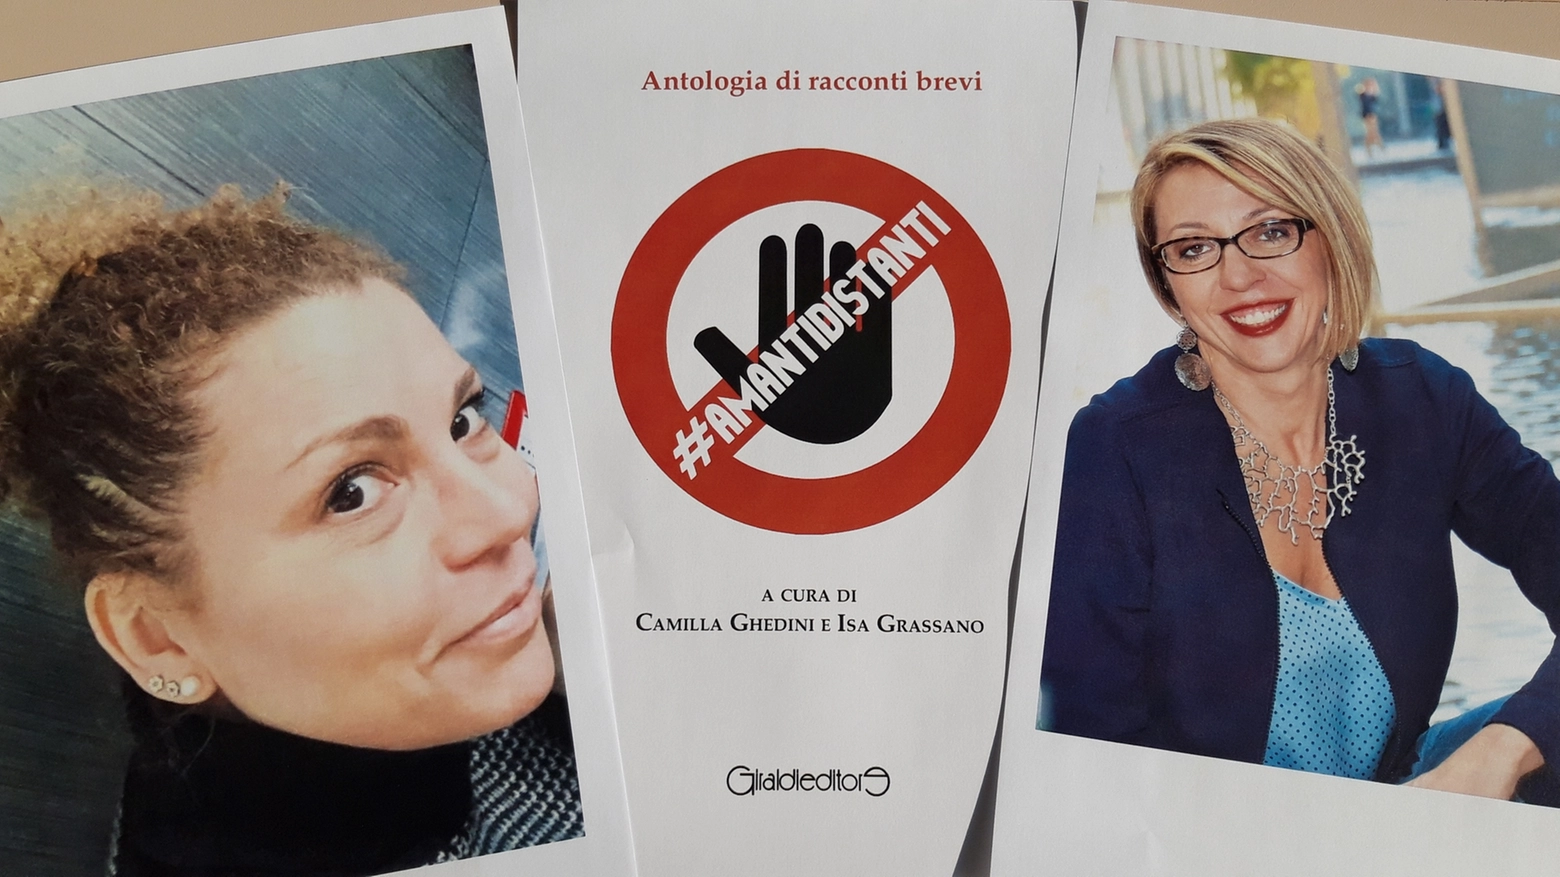 #Amantidistanti, a cura di Camilla Ghedini e Isa Grassano